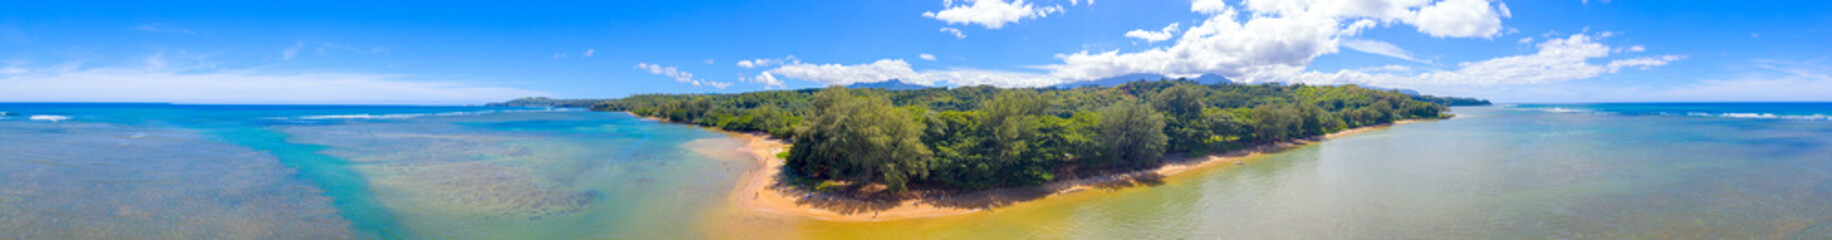 Anini Beach Kauai Hawaii 360 Aerial Panorama White Sand